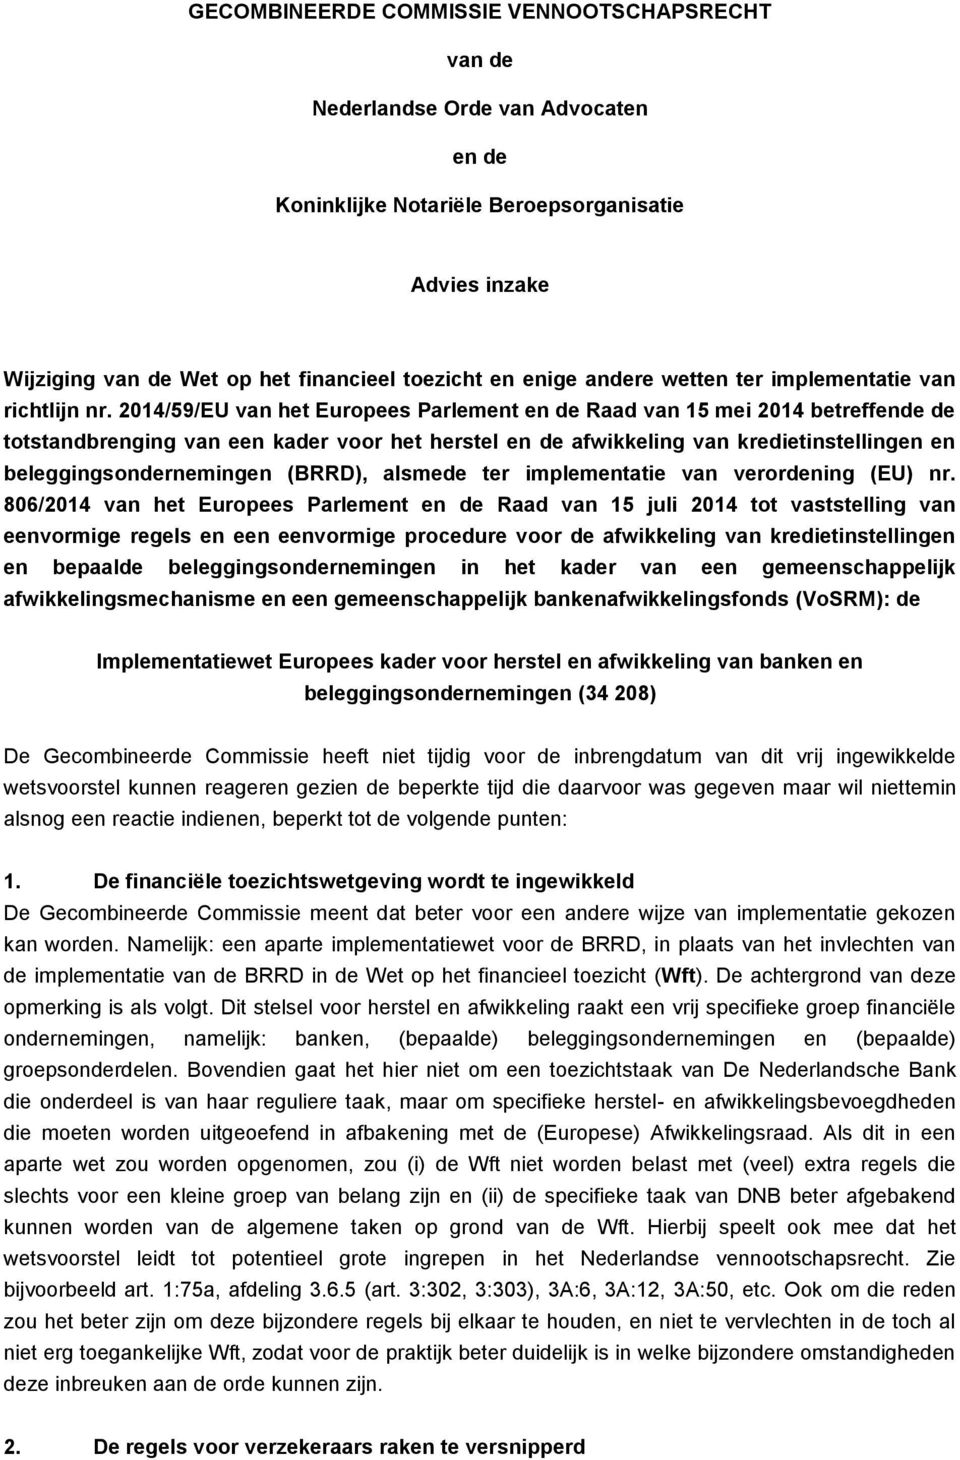 2014/59/EU van het Europees Parlement en de Raad van 15 mei 2014 betreffende de totstandbrenging van een kader voor het herstel en de afwikkeling van kredietinstellingen en beleggingsondernemingen